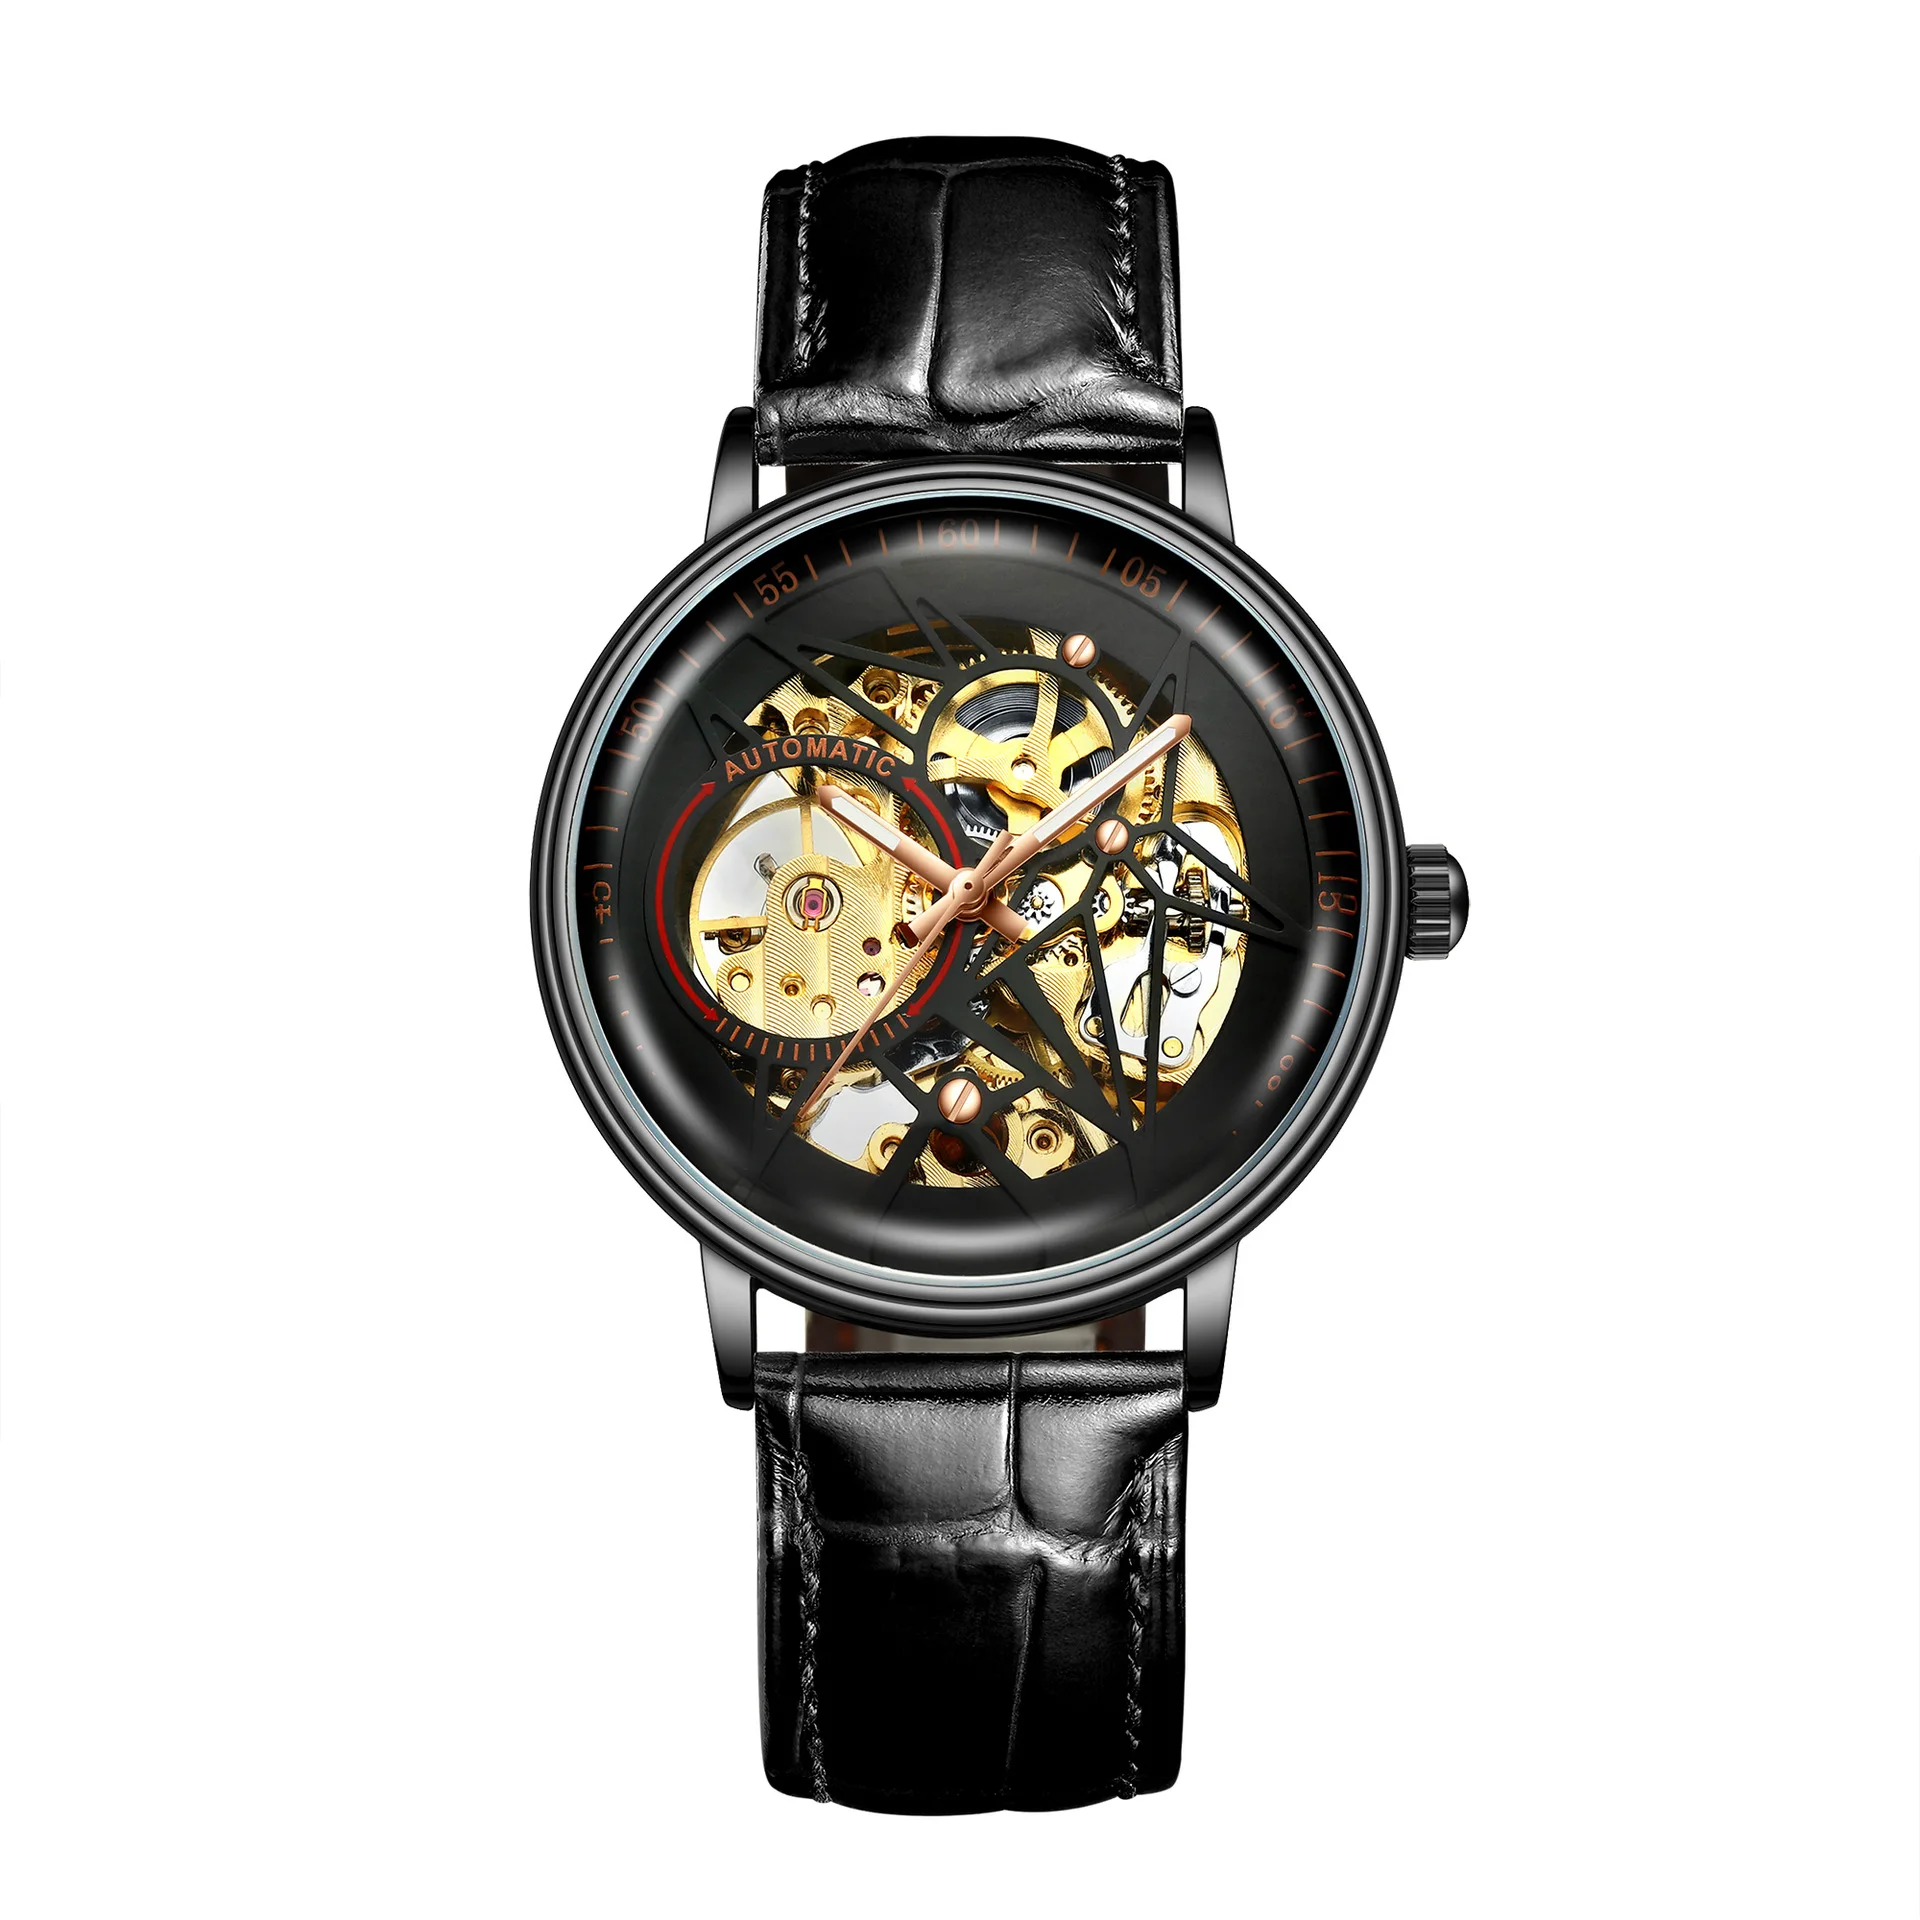 BIDEN Топ бренд для мужчин новая мода автоматические механические часы со скелетом Tourbillon водонепроницаемые спортивные мужские наручные часы Relogio - Цвет: black-black